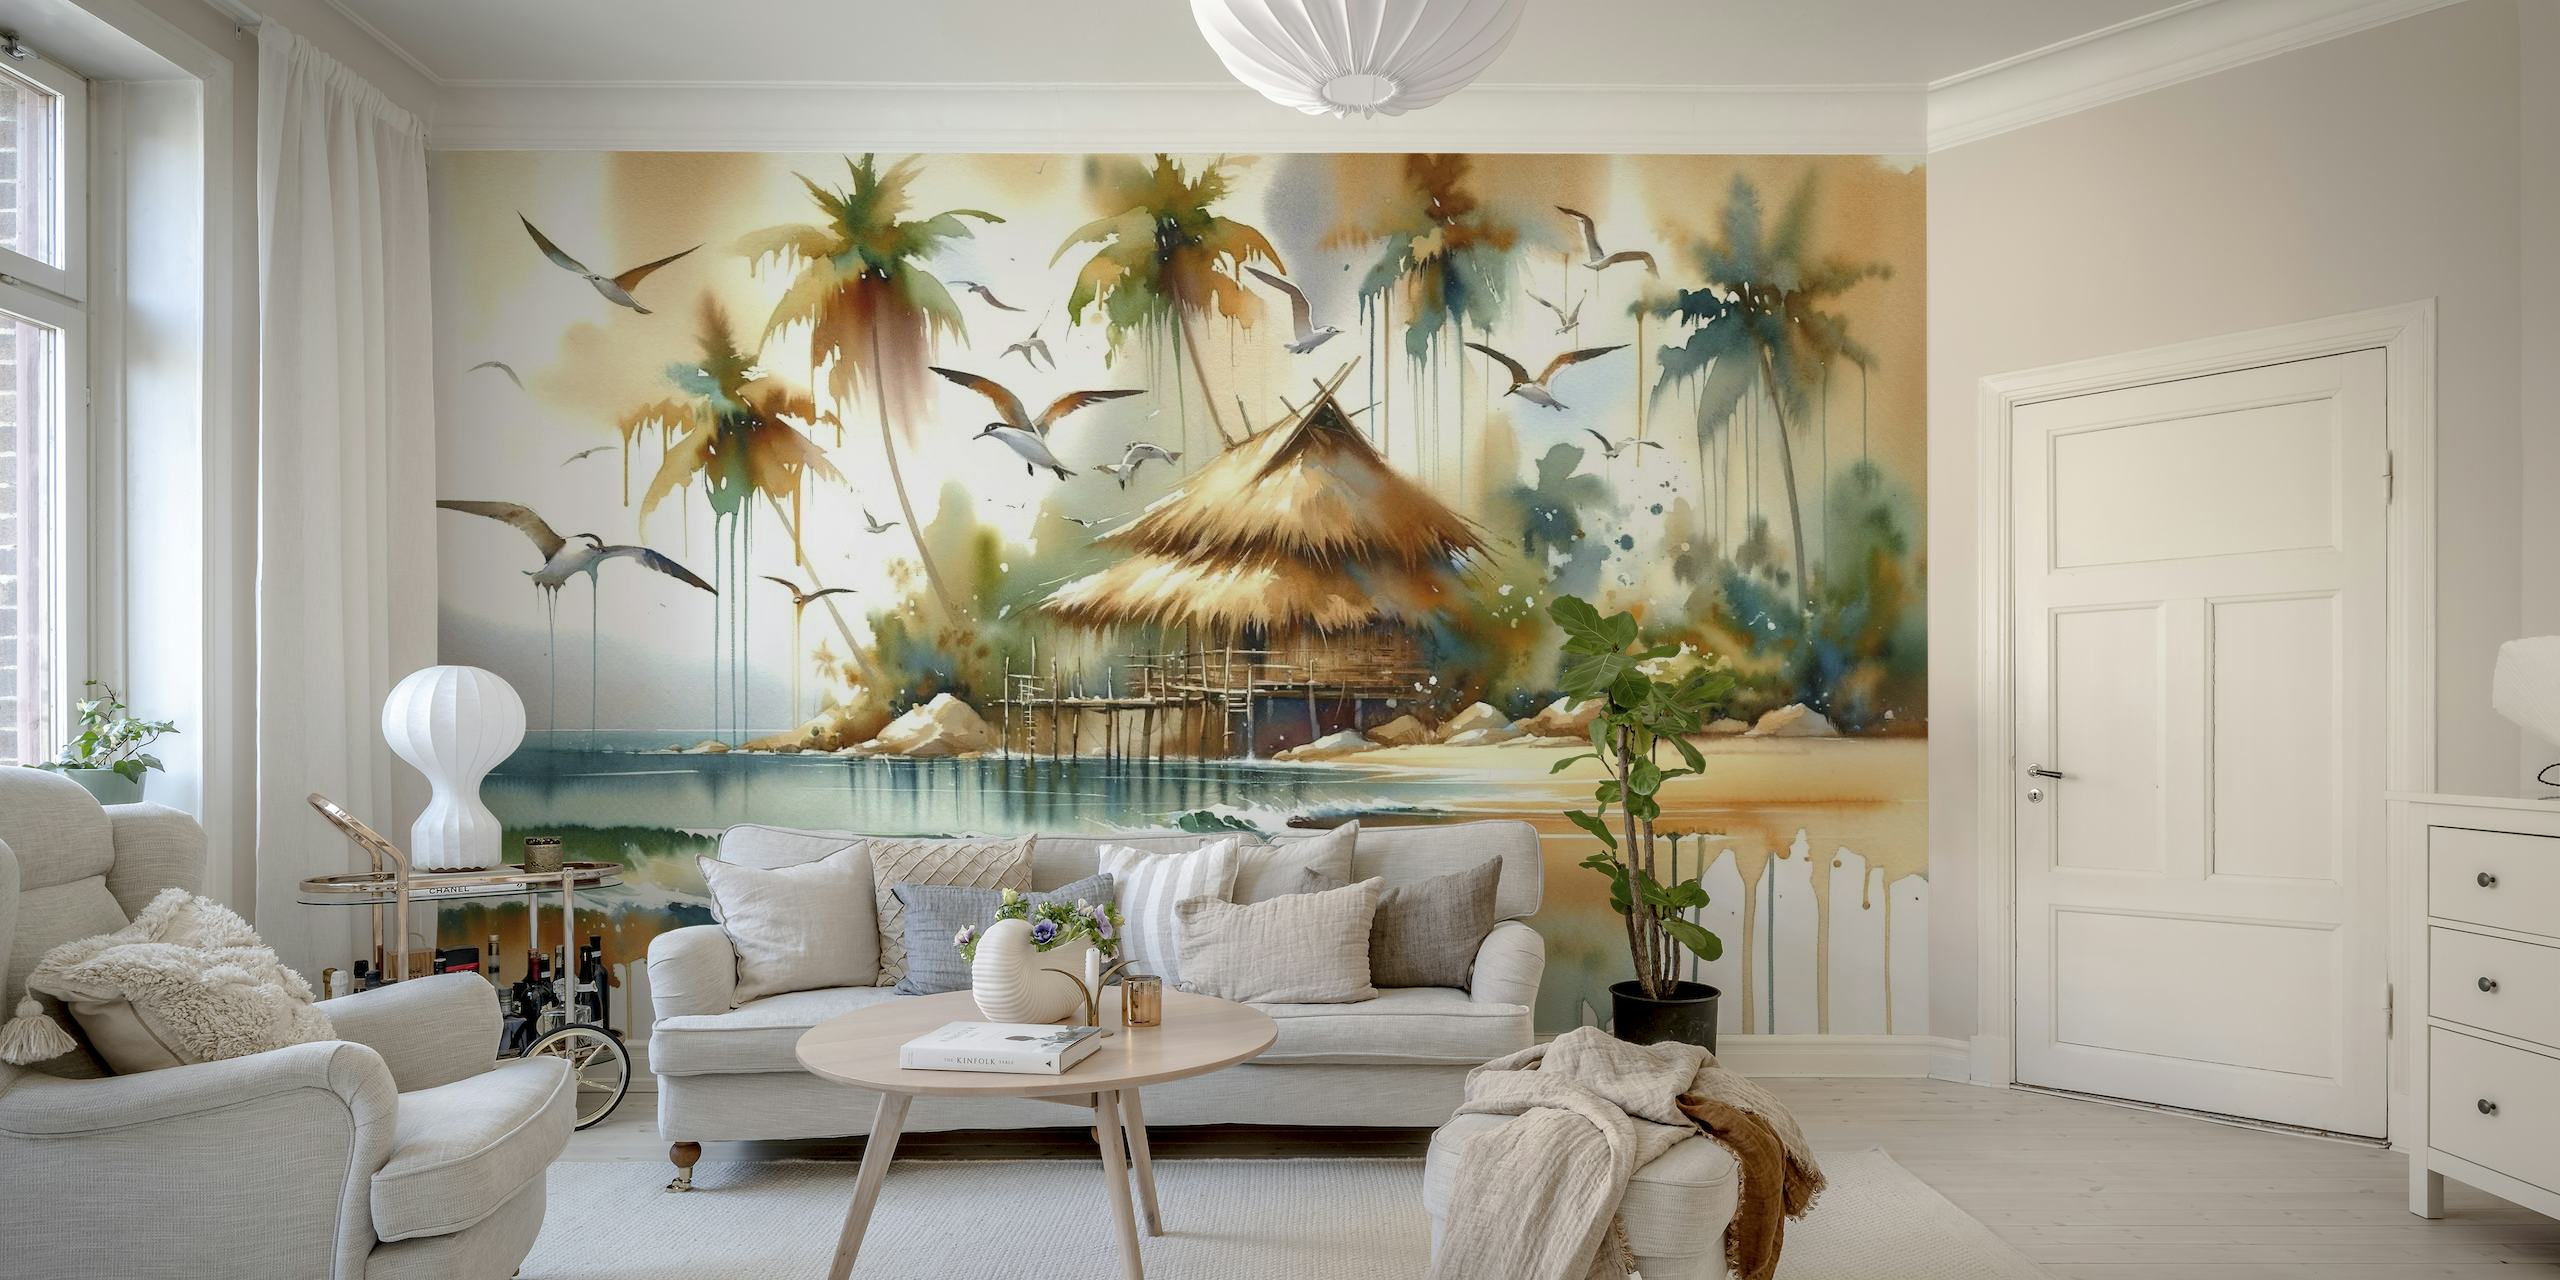 Mural de pared de acuarela abstracta que representa una serena escena isleña con palmeras, una cabaña con techo de paja y suaves olas.